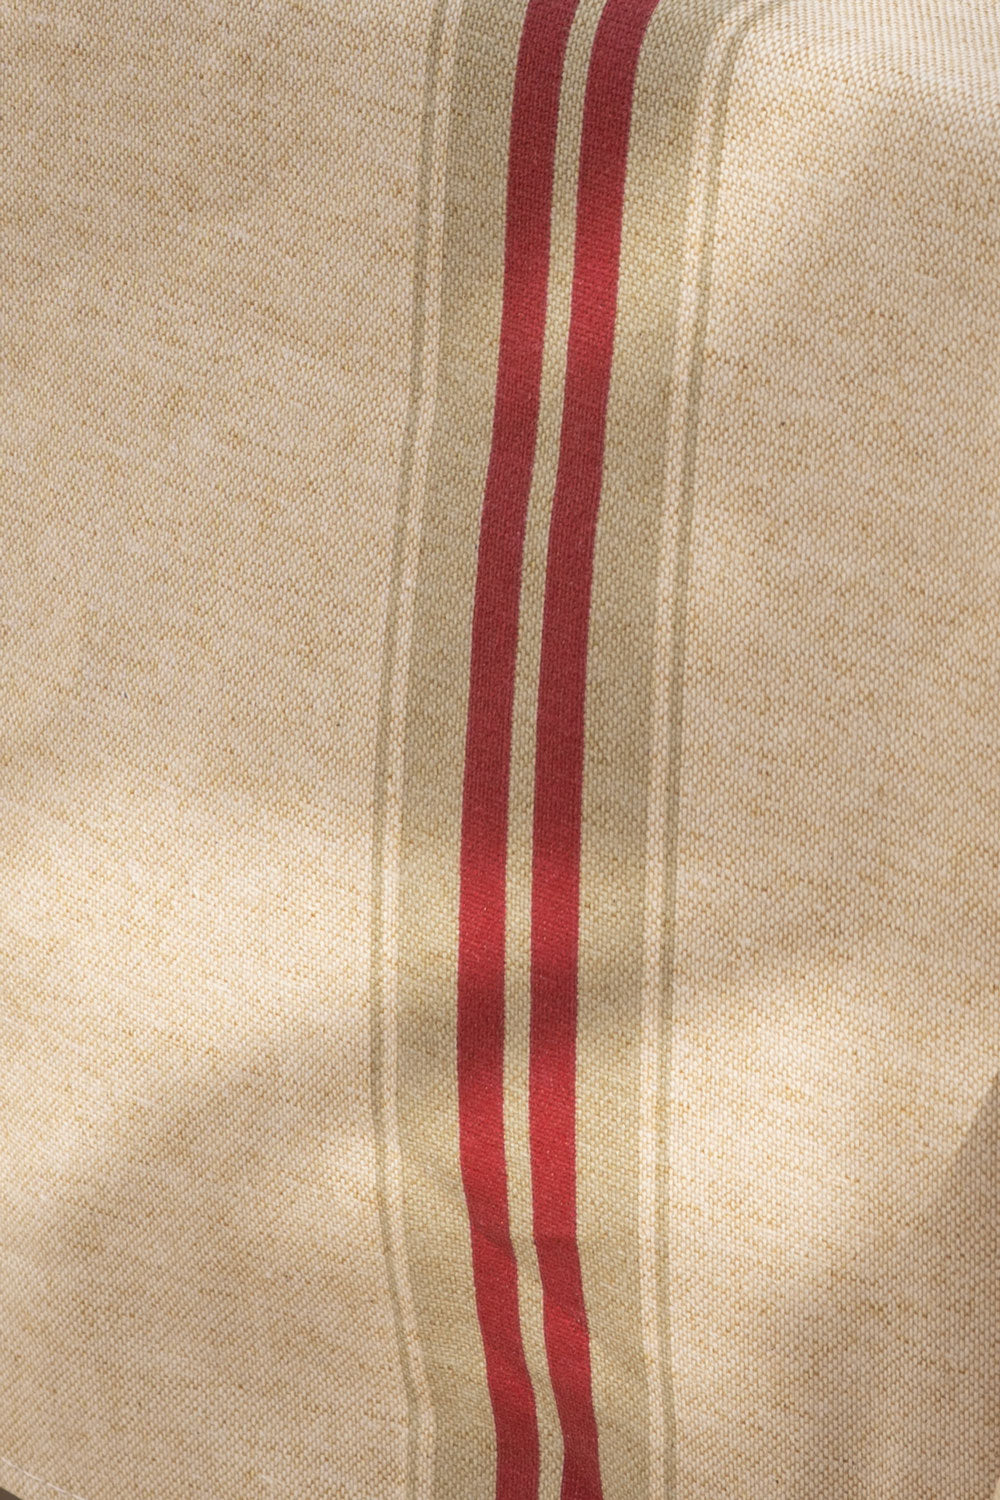 Detalle manteles antimanchas con diseño de rayas rojas cristina oria